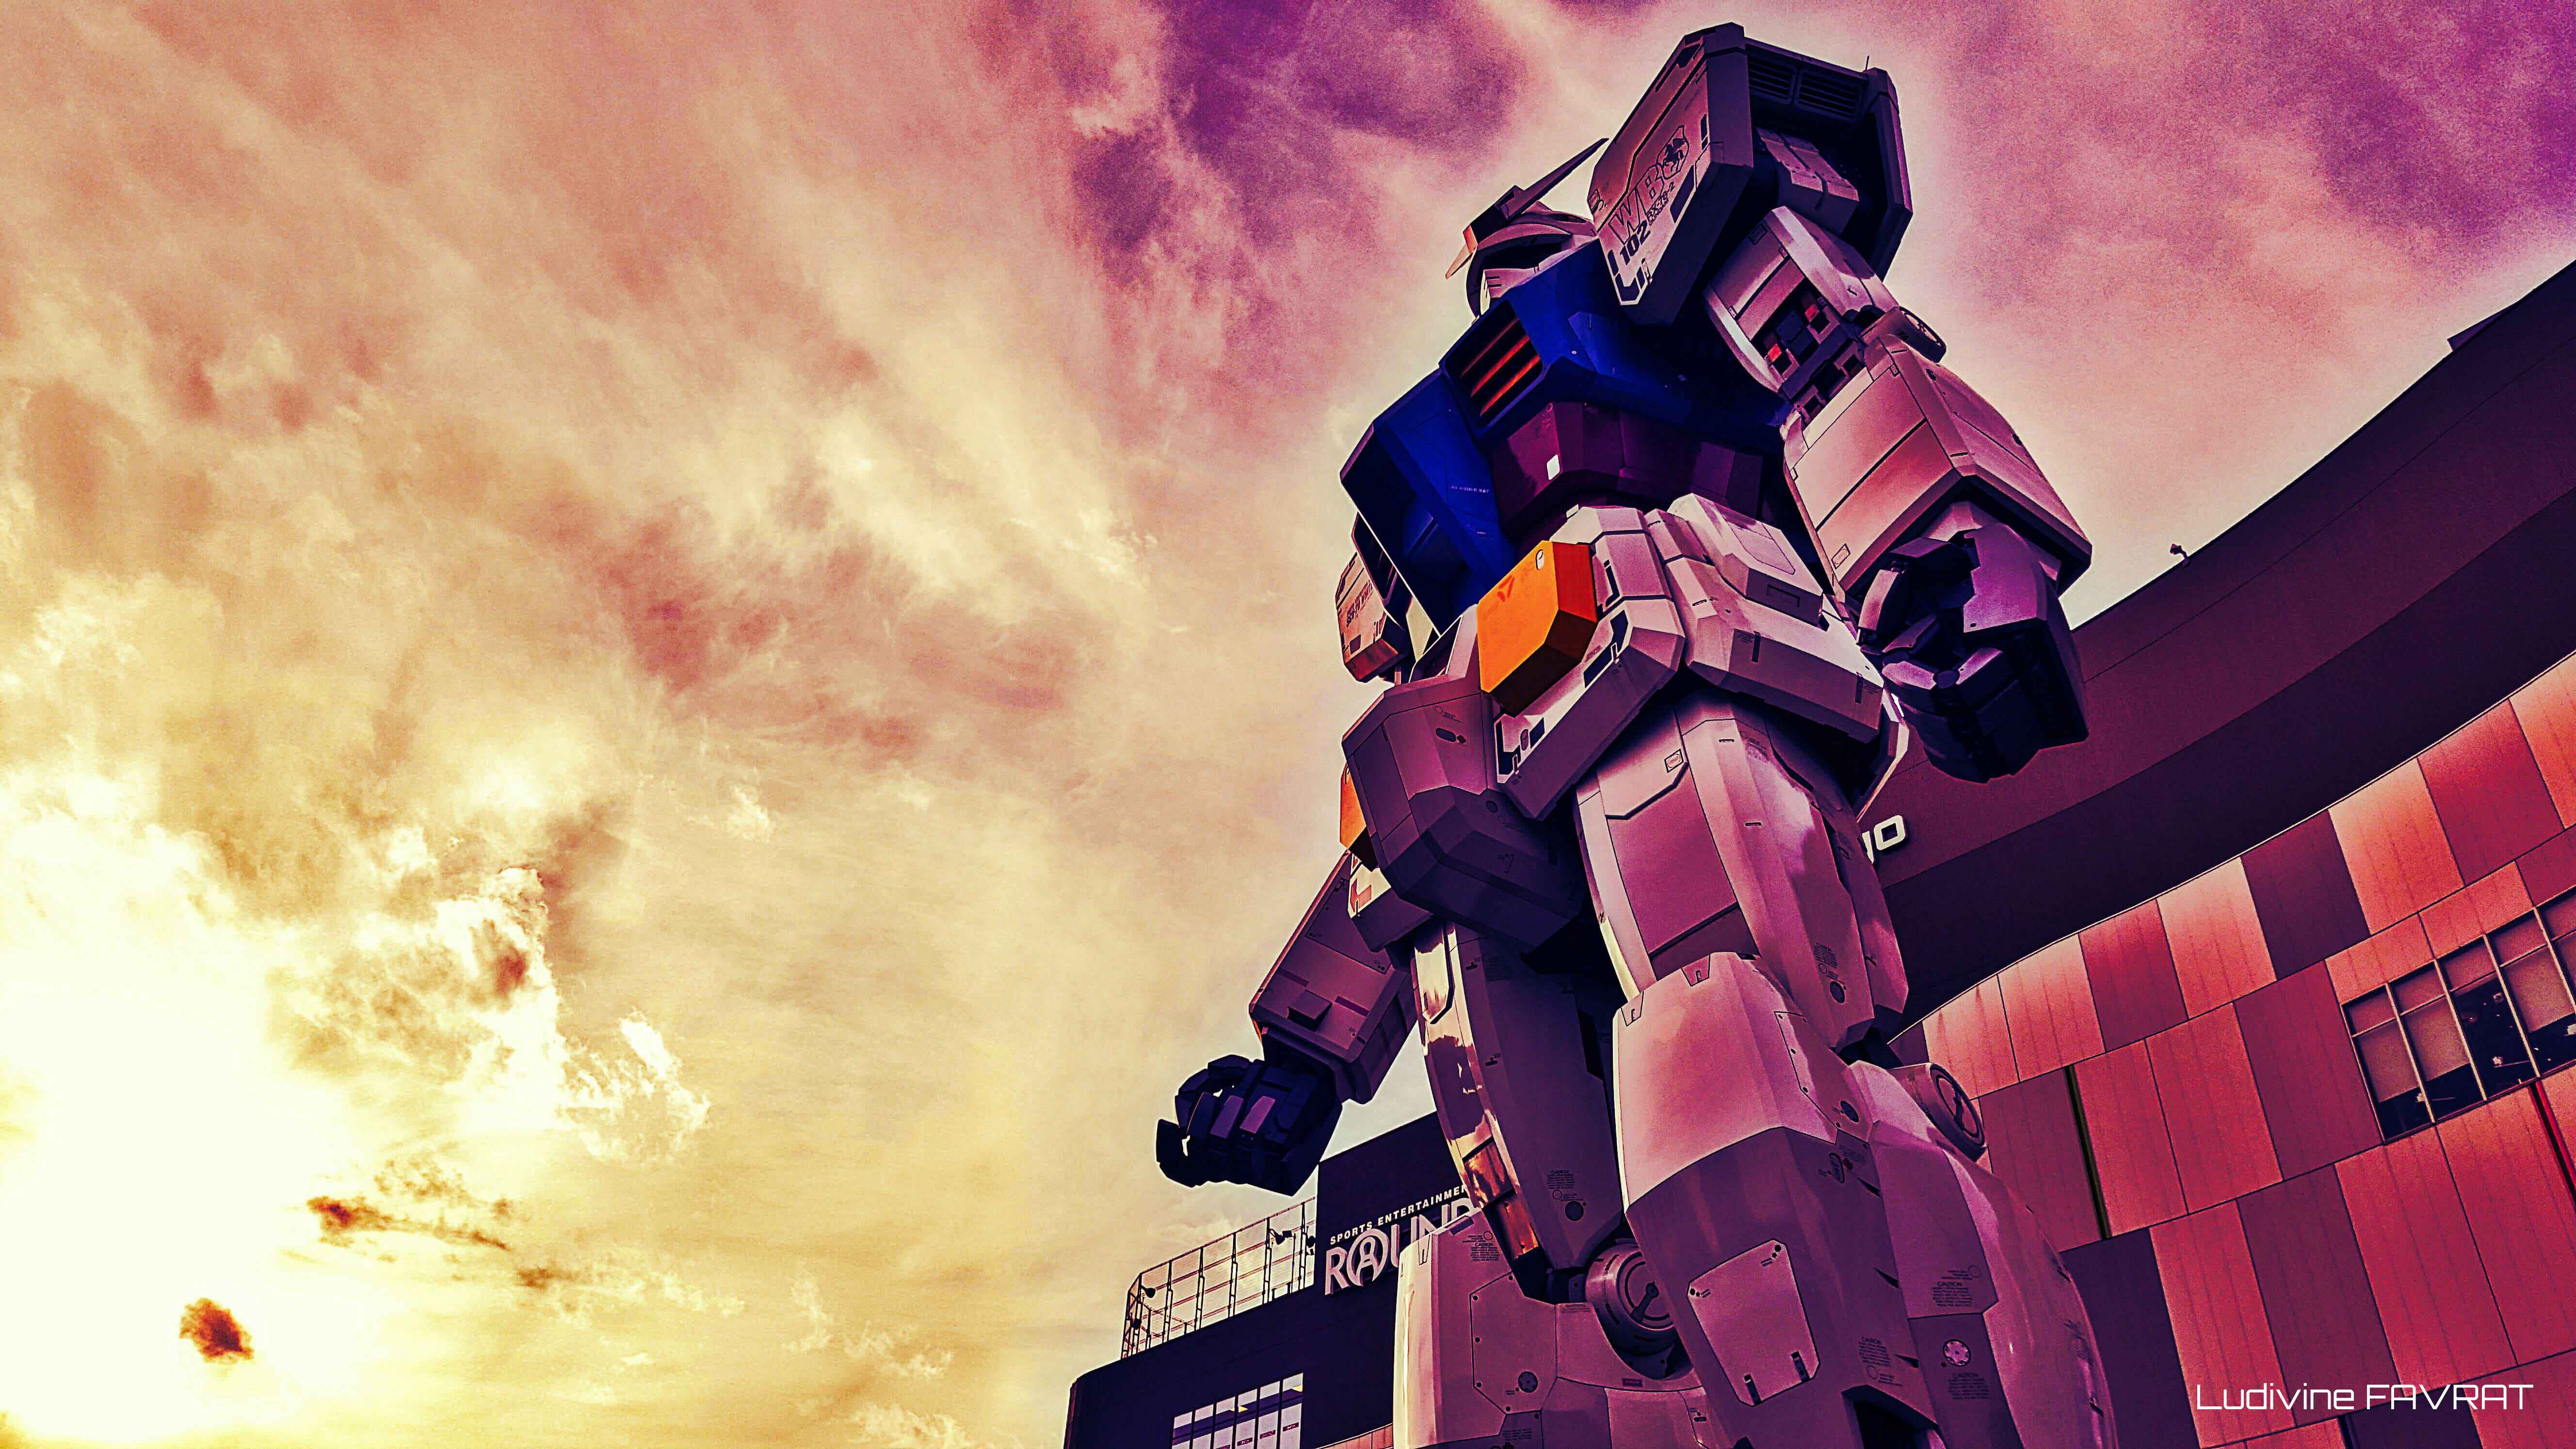 Gundam, création numérique d'après photo personelle